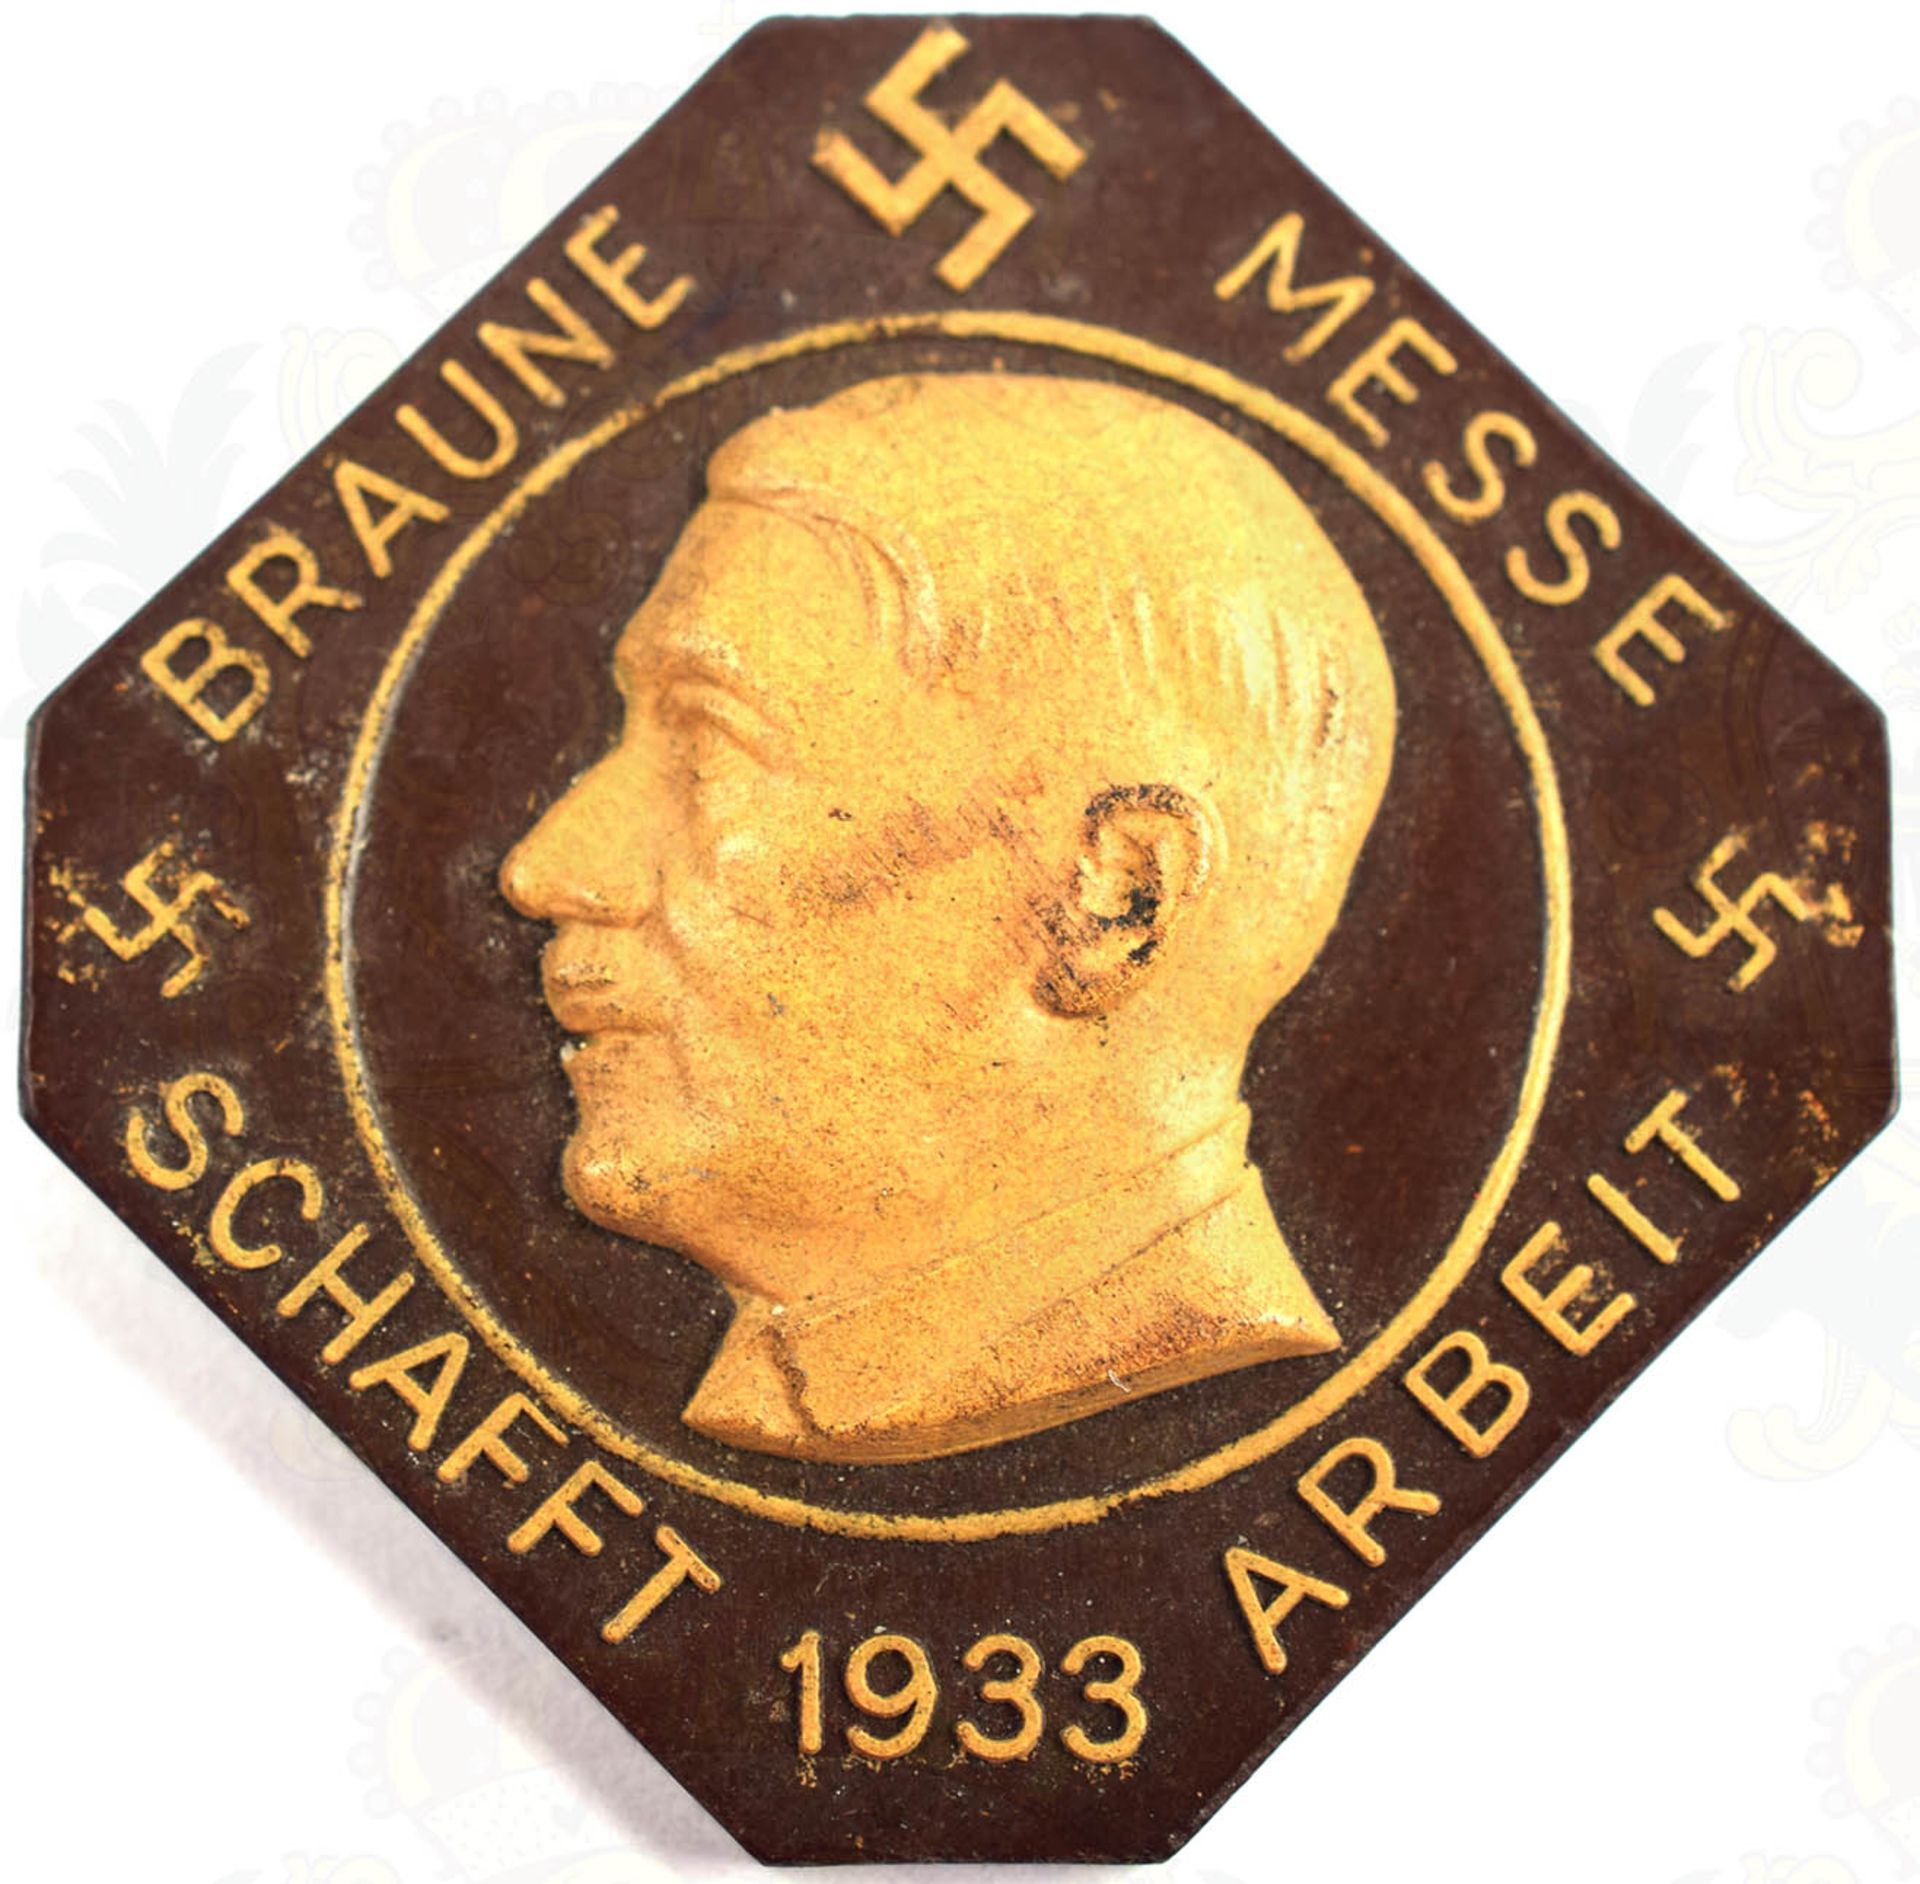 BRAUNE MESSE SCHAFFT ARBEIT 1933, Herst. „Bakelite Berlin“ u. Nr. „0299342, Bakelit, m. HK u. - Bild 2 aus 4